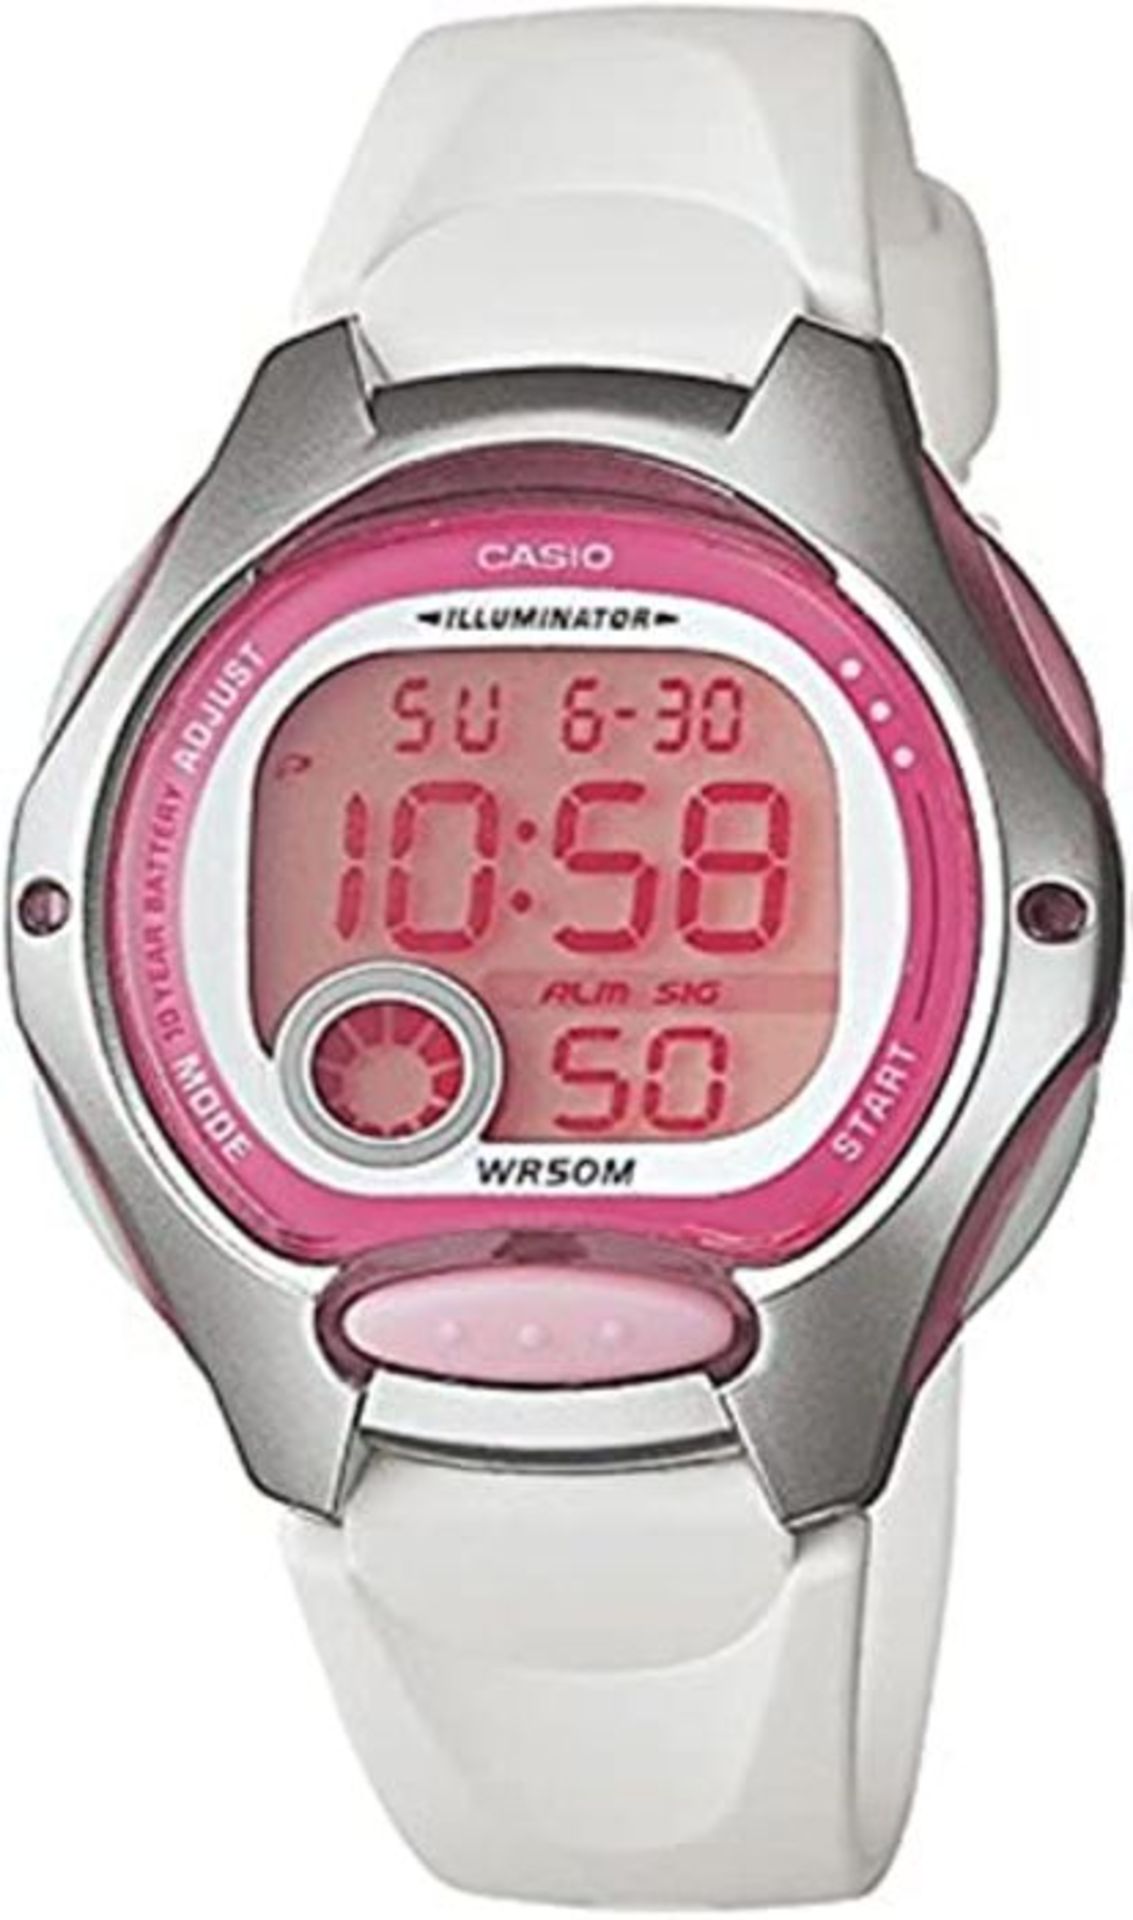 Casio LW-200-7 A, Women s Wrist Watch